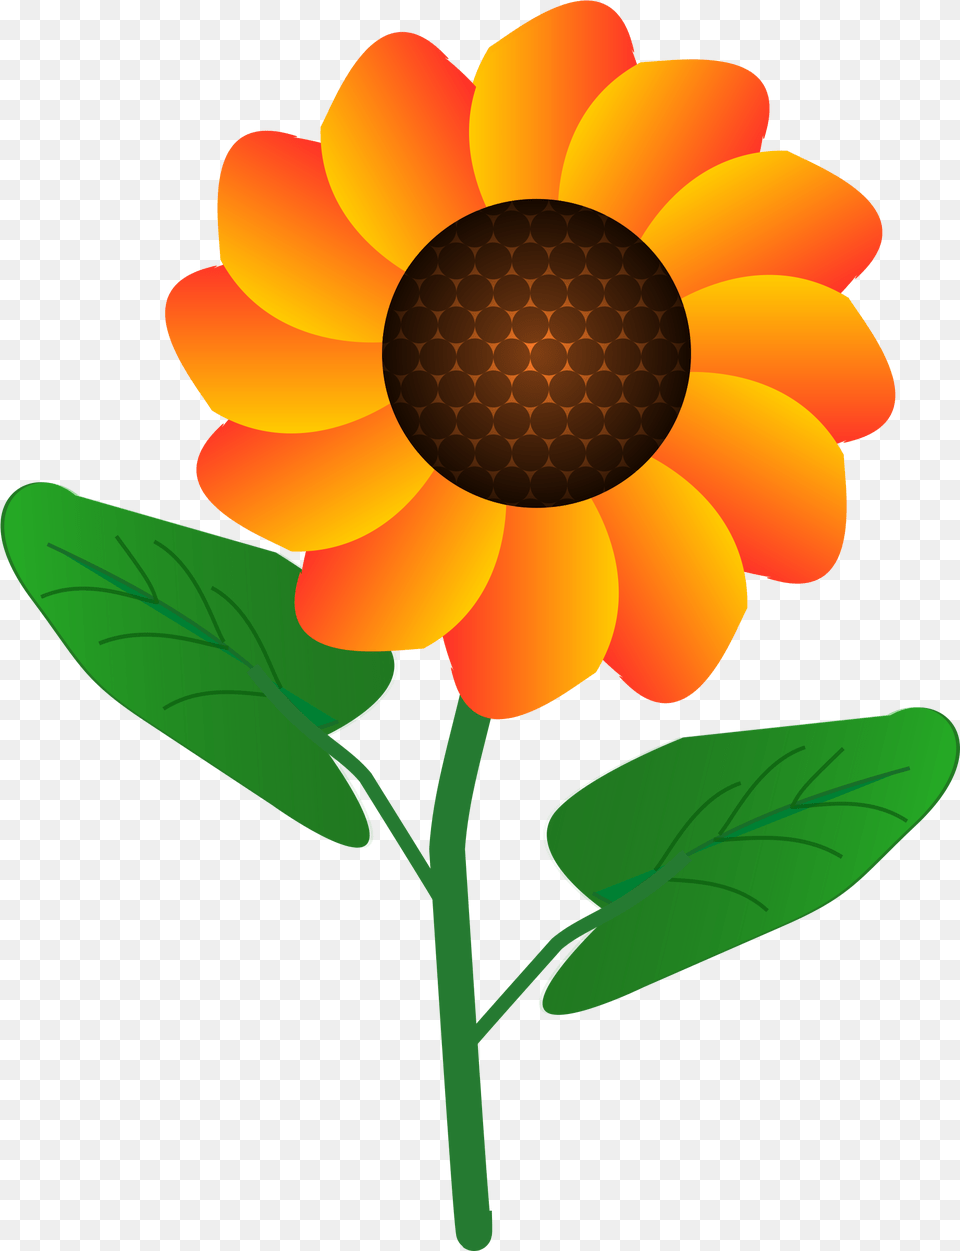 Flower Simple Flower Clipart Design, Dahlia, Daisy, Petal, Plant Free Transparent Png